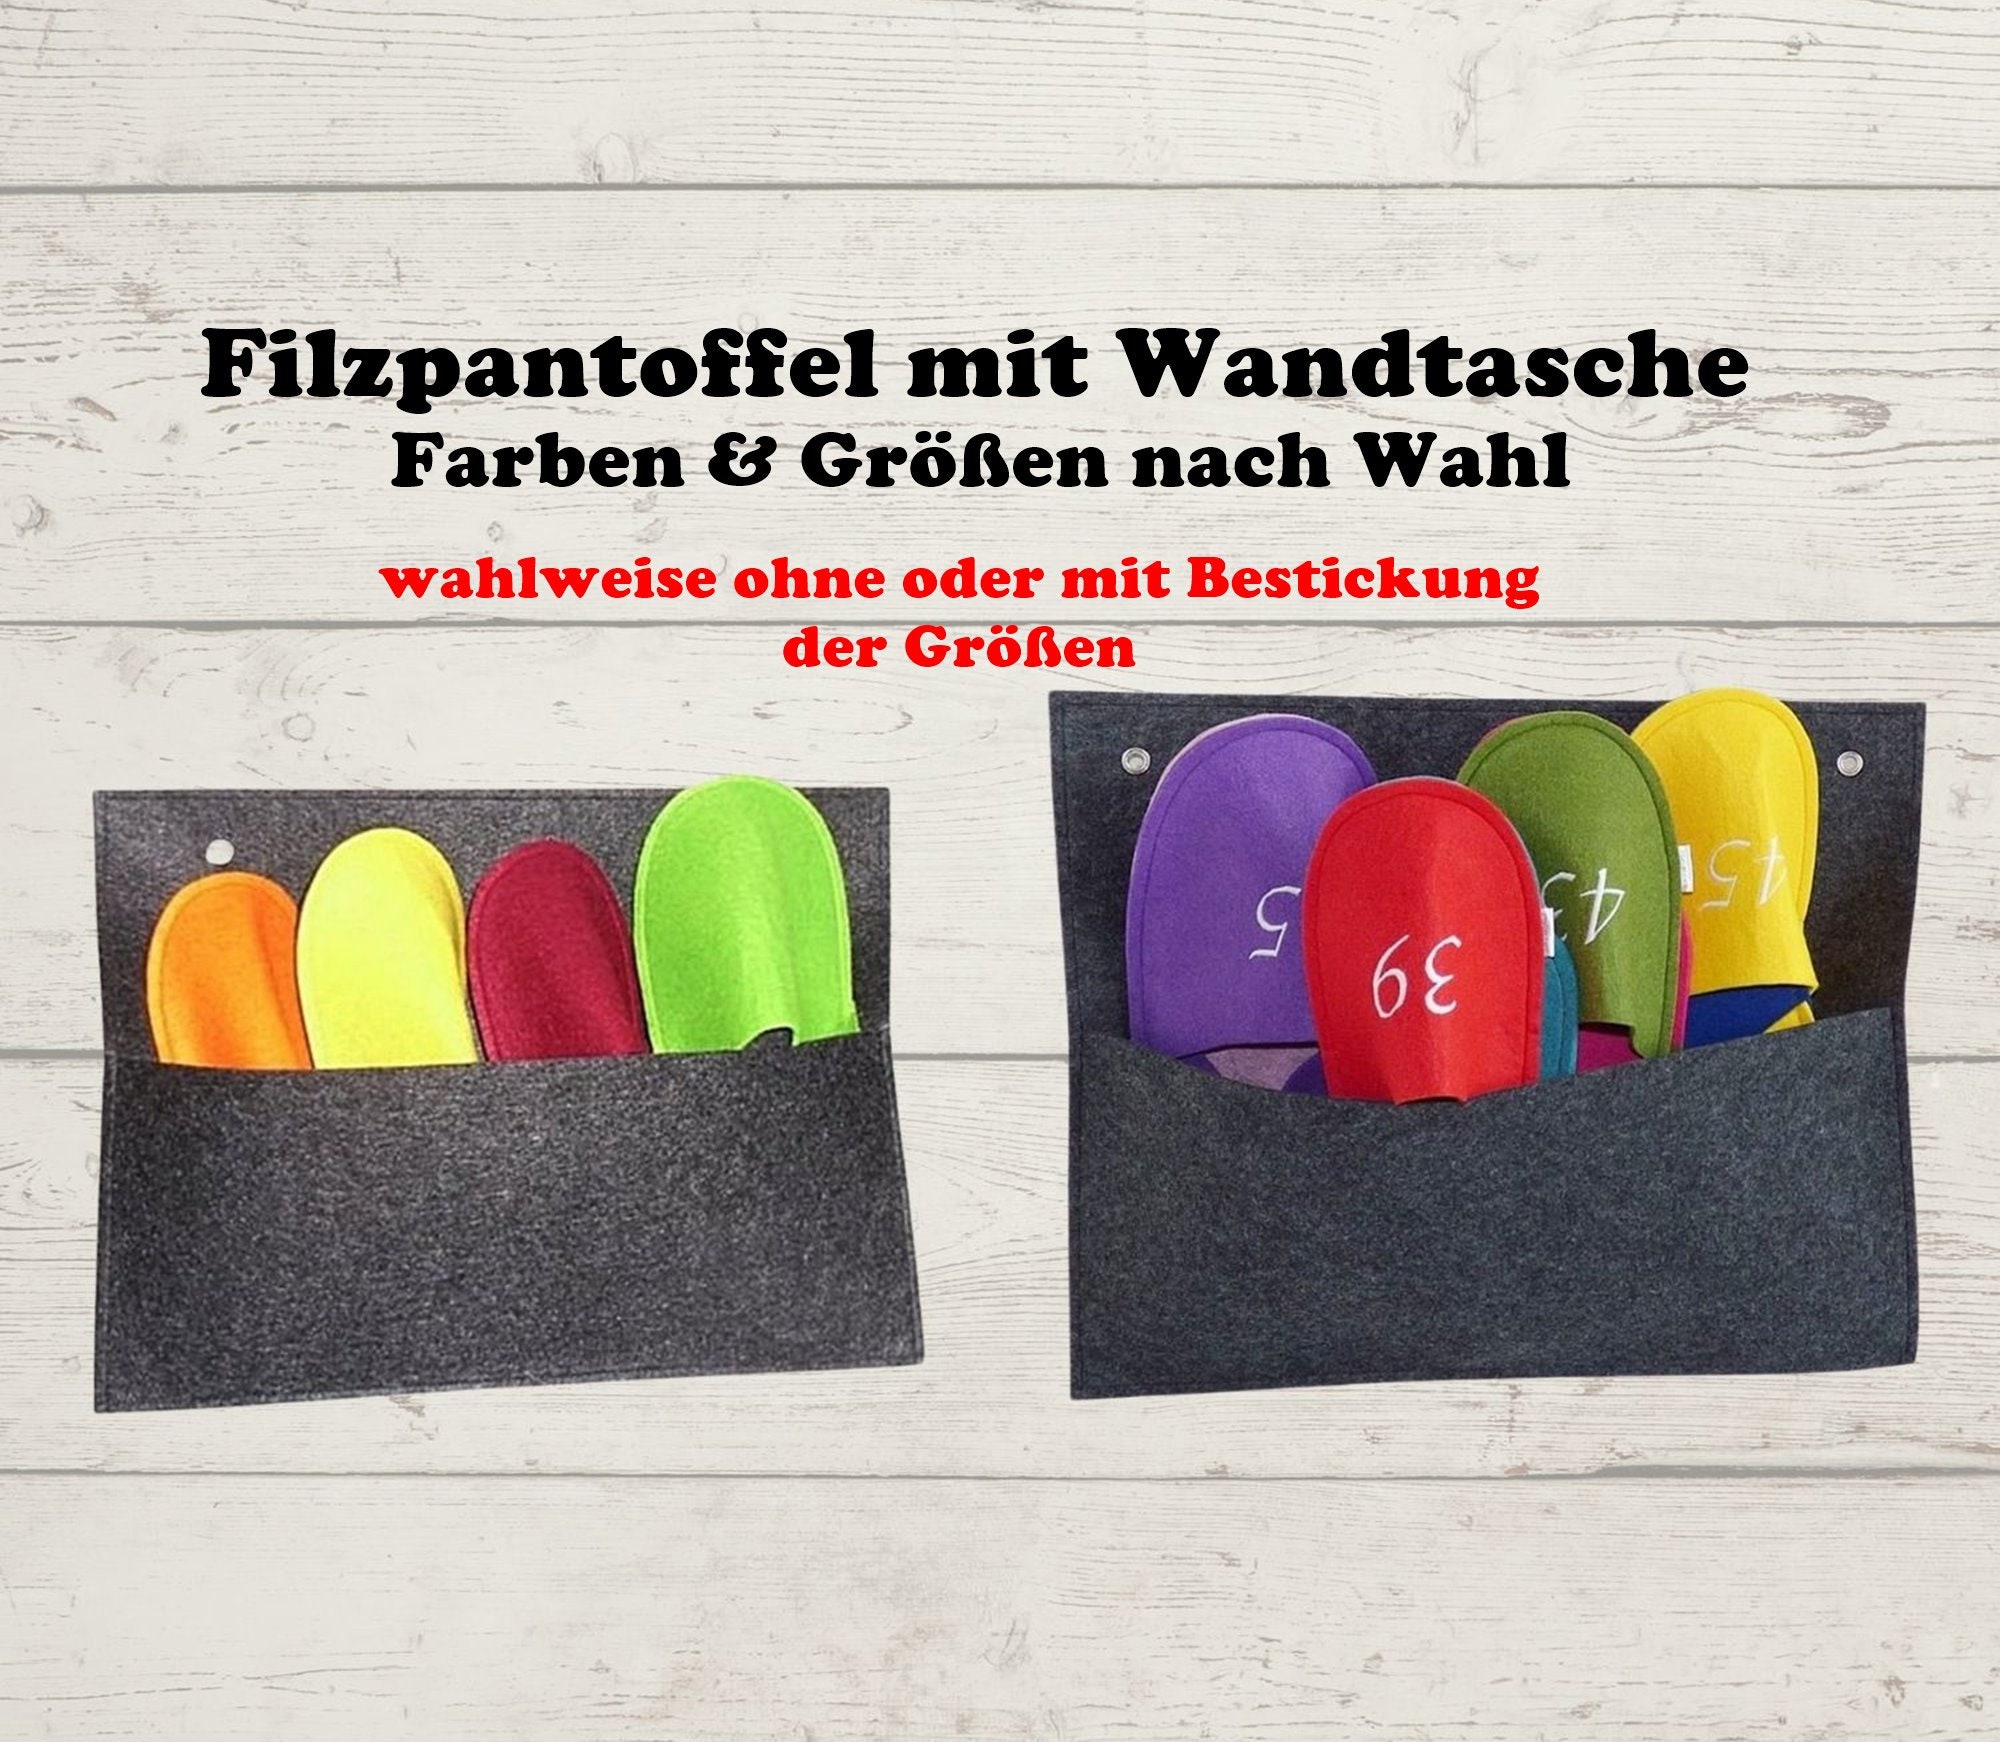 Guest slippers set - Etsy.de